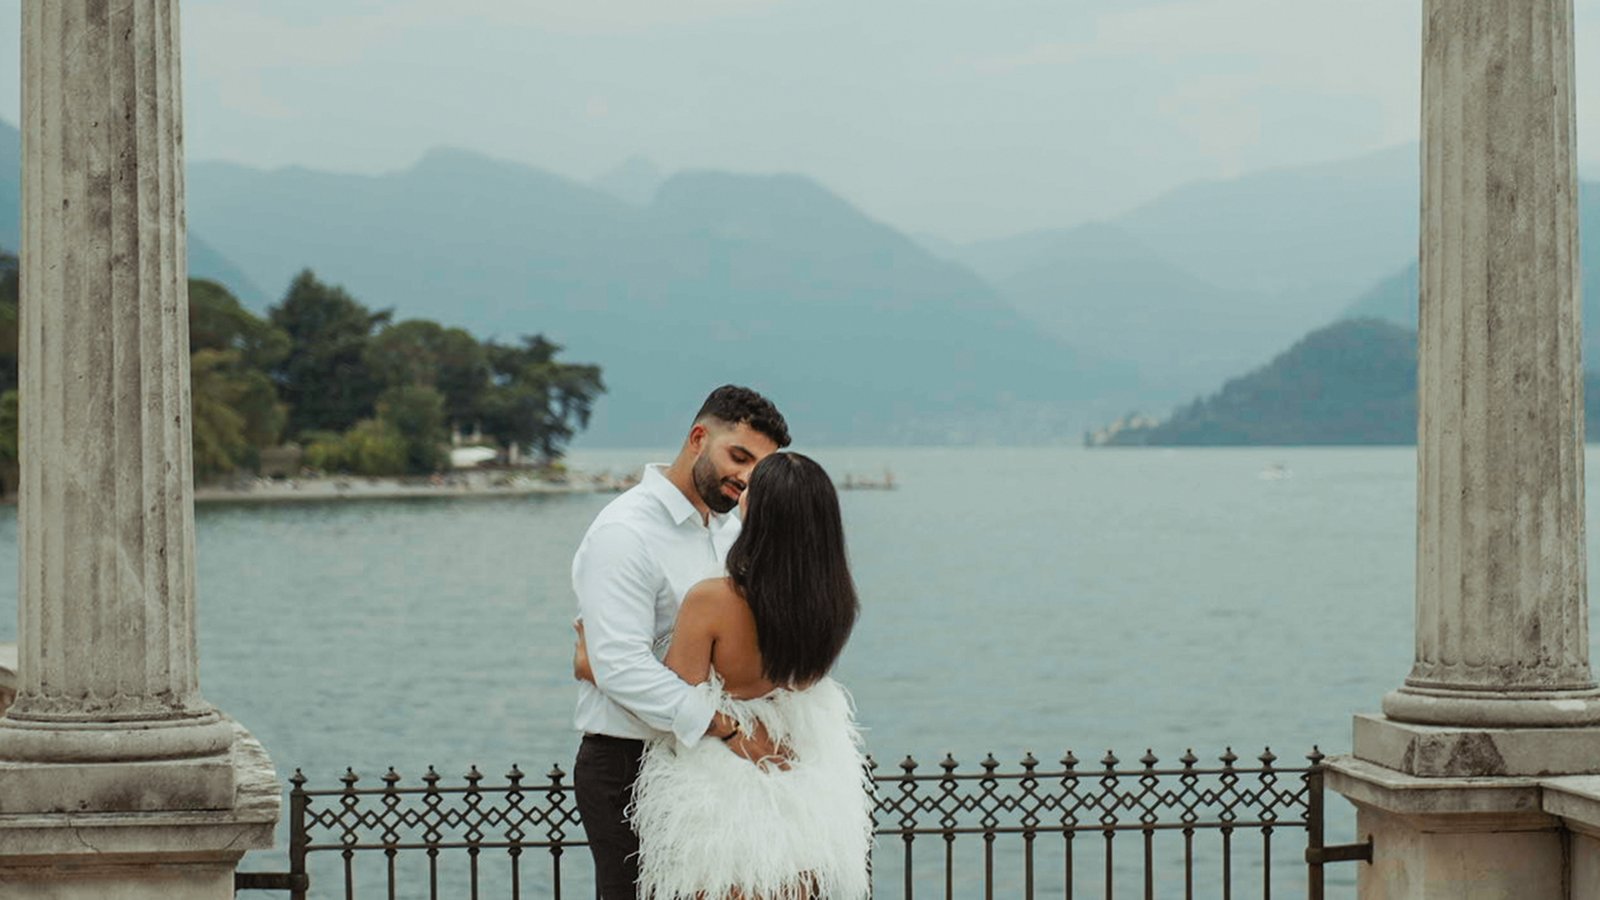 Hai pensato di organizzare il tuo matrimonio sul Lago di Como?